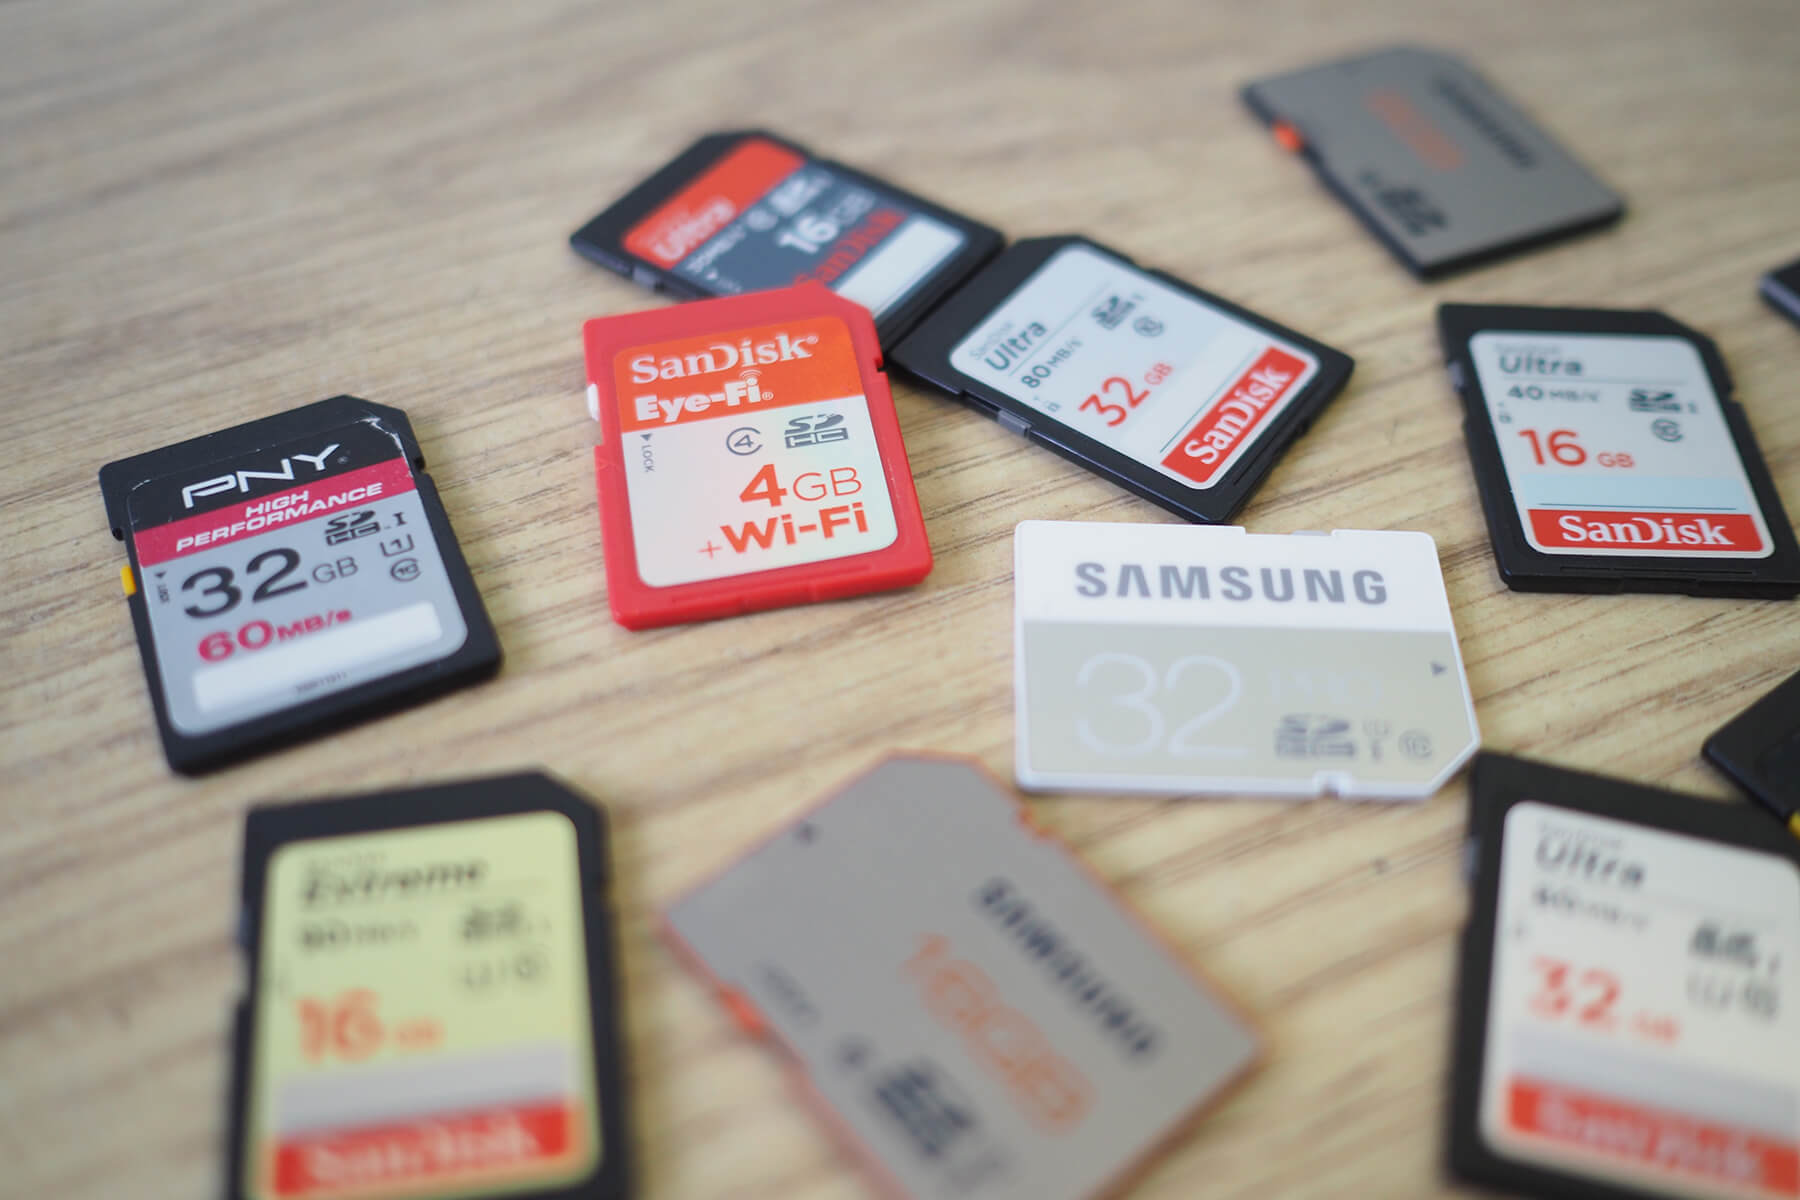 Camera memory cards